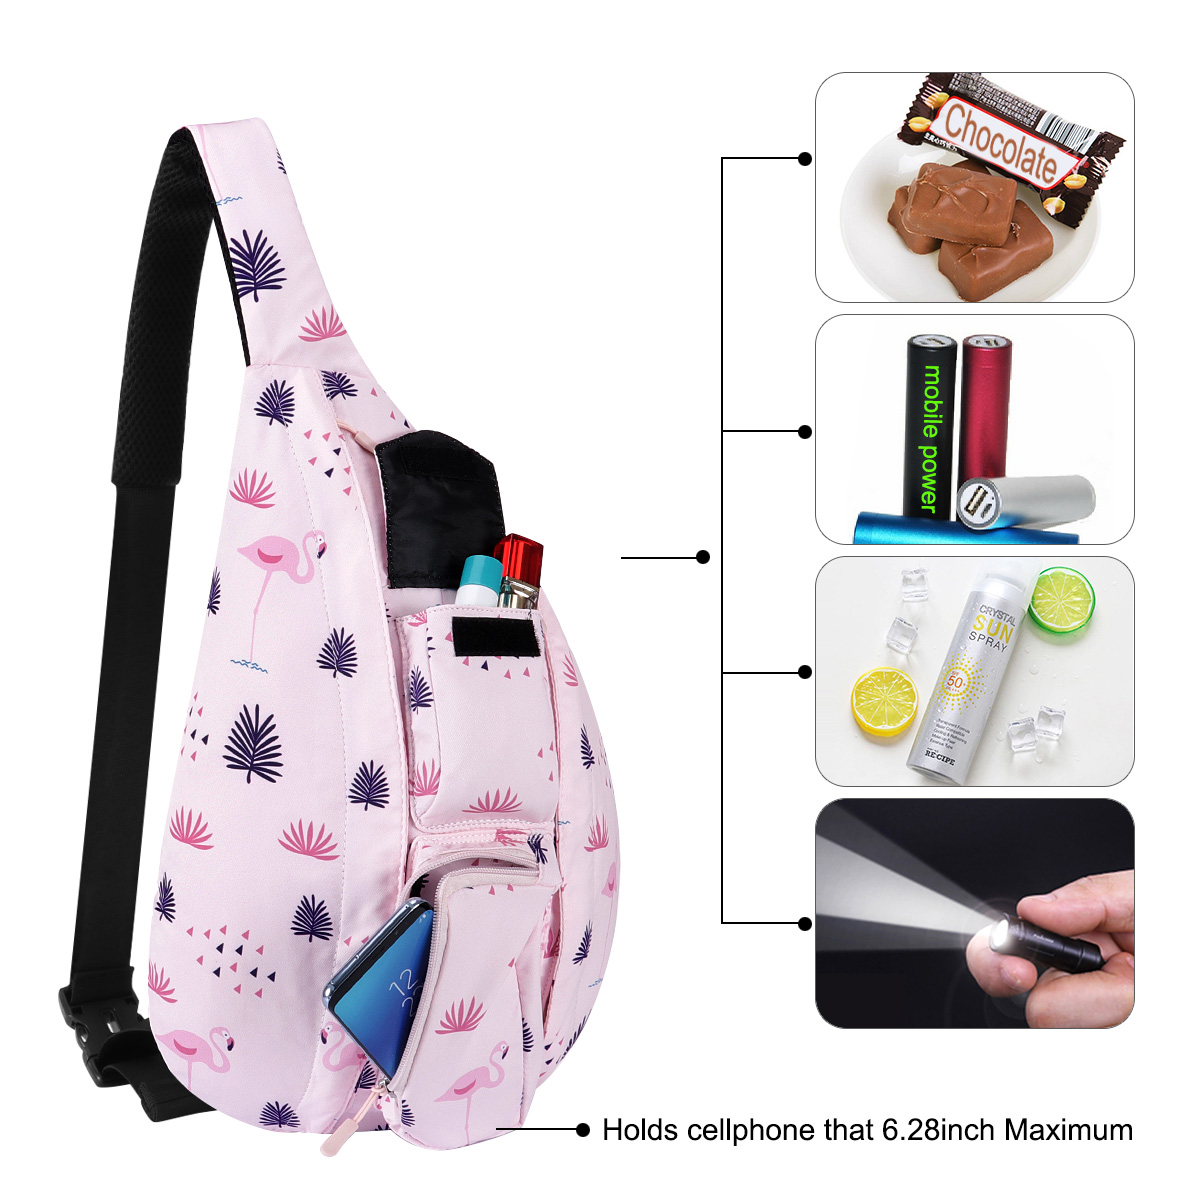 HAWEE Shoulder Sling Bag Hiking Backpack Chest Sling Bag Travel Crossbody Daypack for Women, Flamingo Pink - image 3 of 7